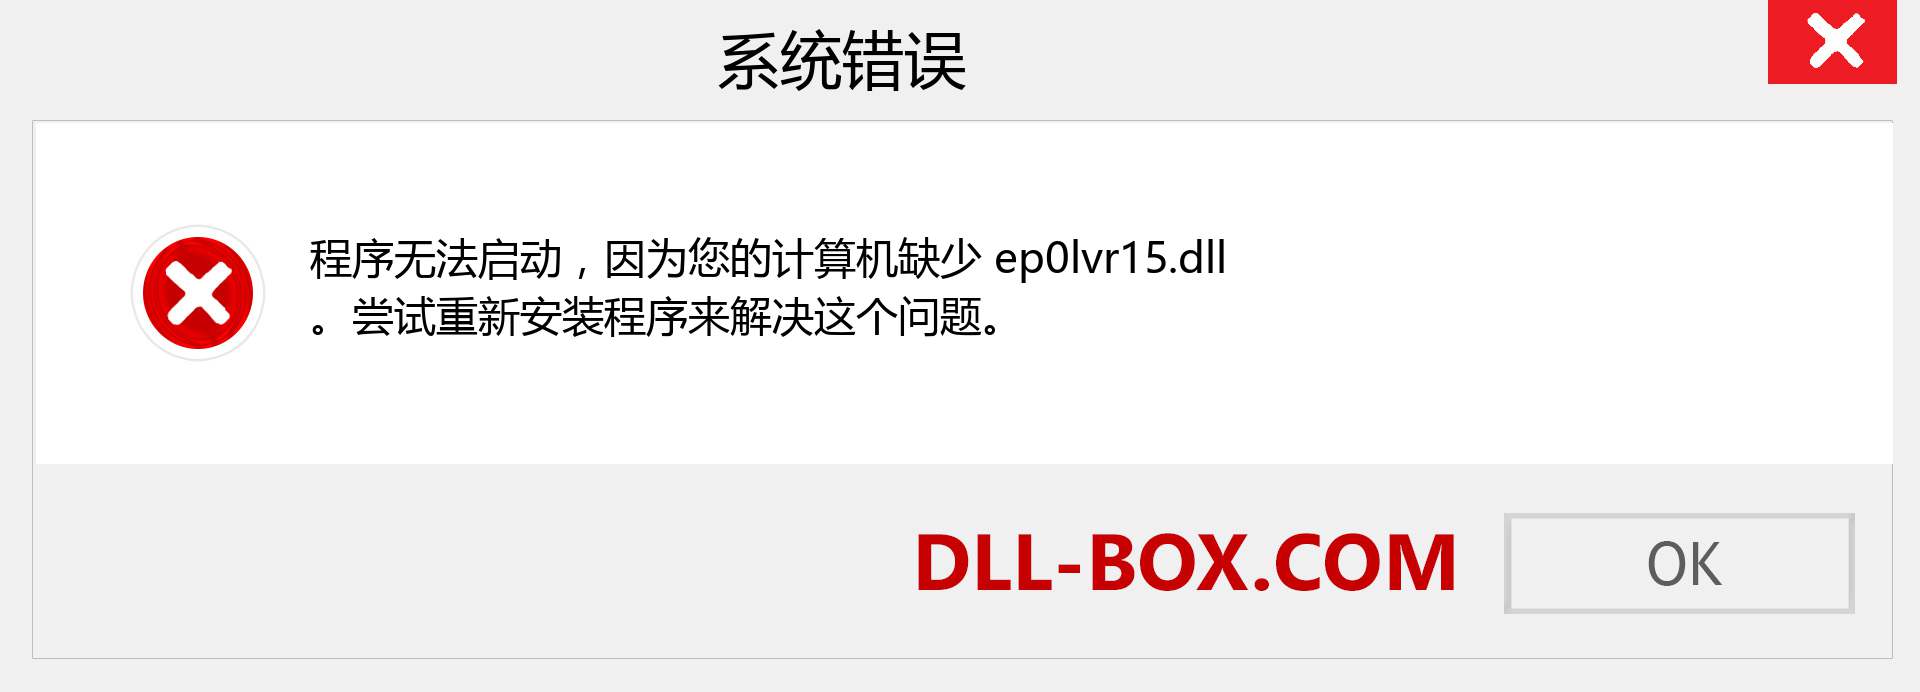 ep0lvr15.dll 文件丢失？。 适用于 Windows 7、8、10 的下载 - 修复 Windows、照片、图像上的 ep0lvr15 dll 丢失错误